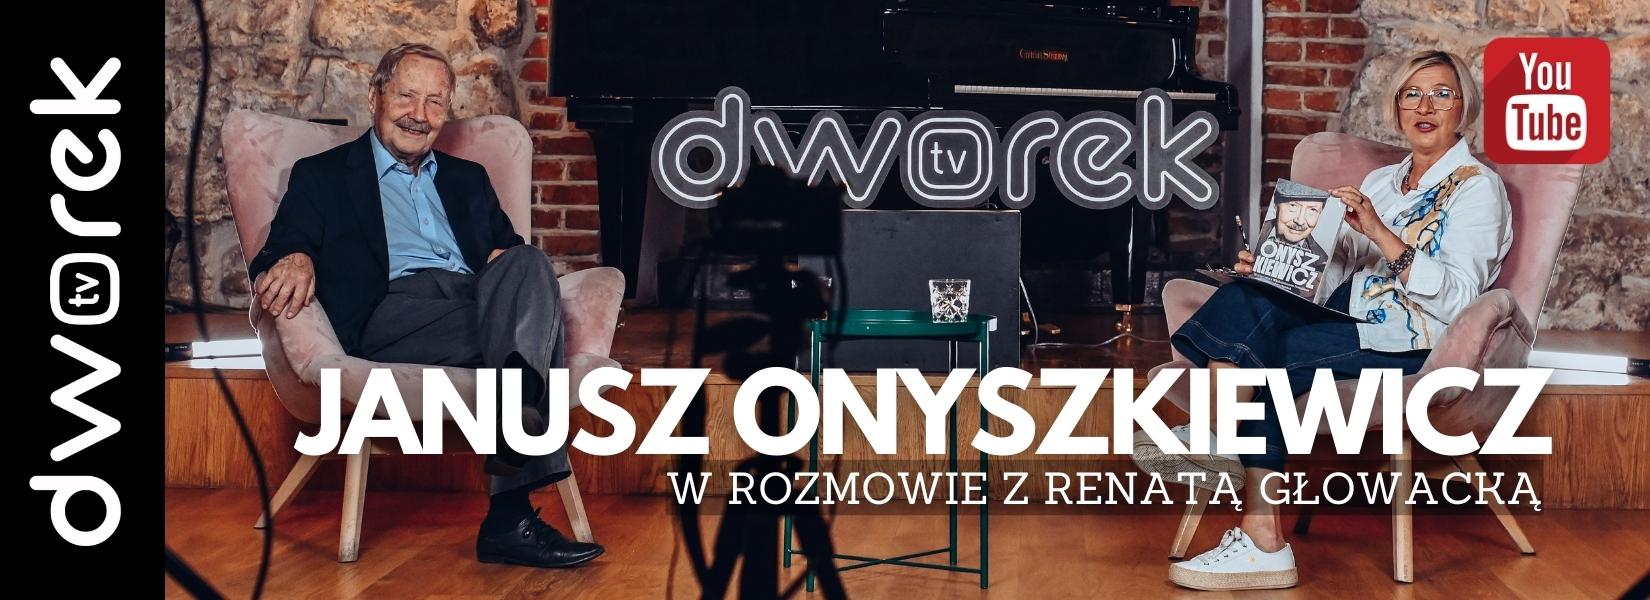 Świat na głowie | Janusz Onyszkiewicz | Dworek TV